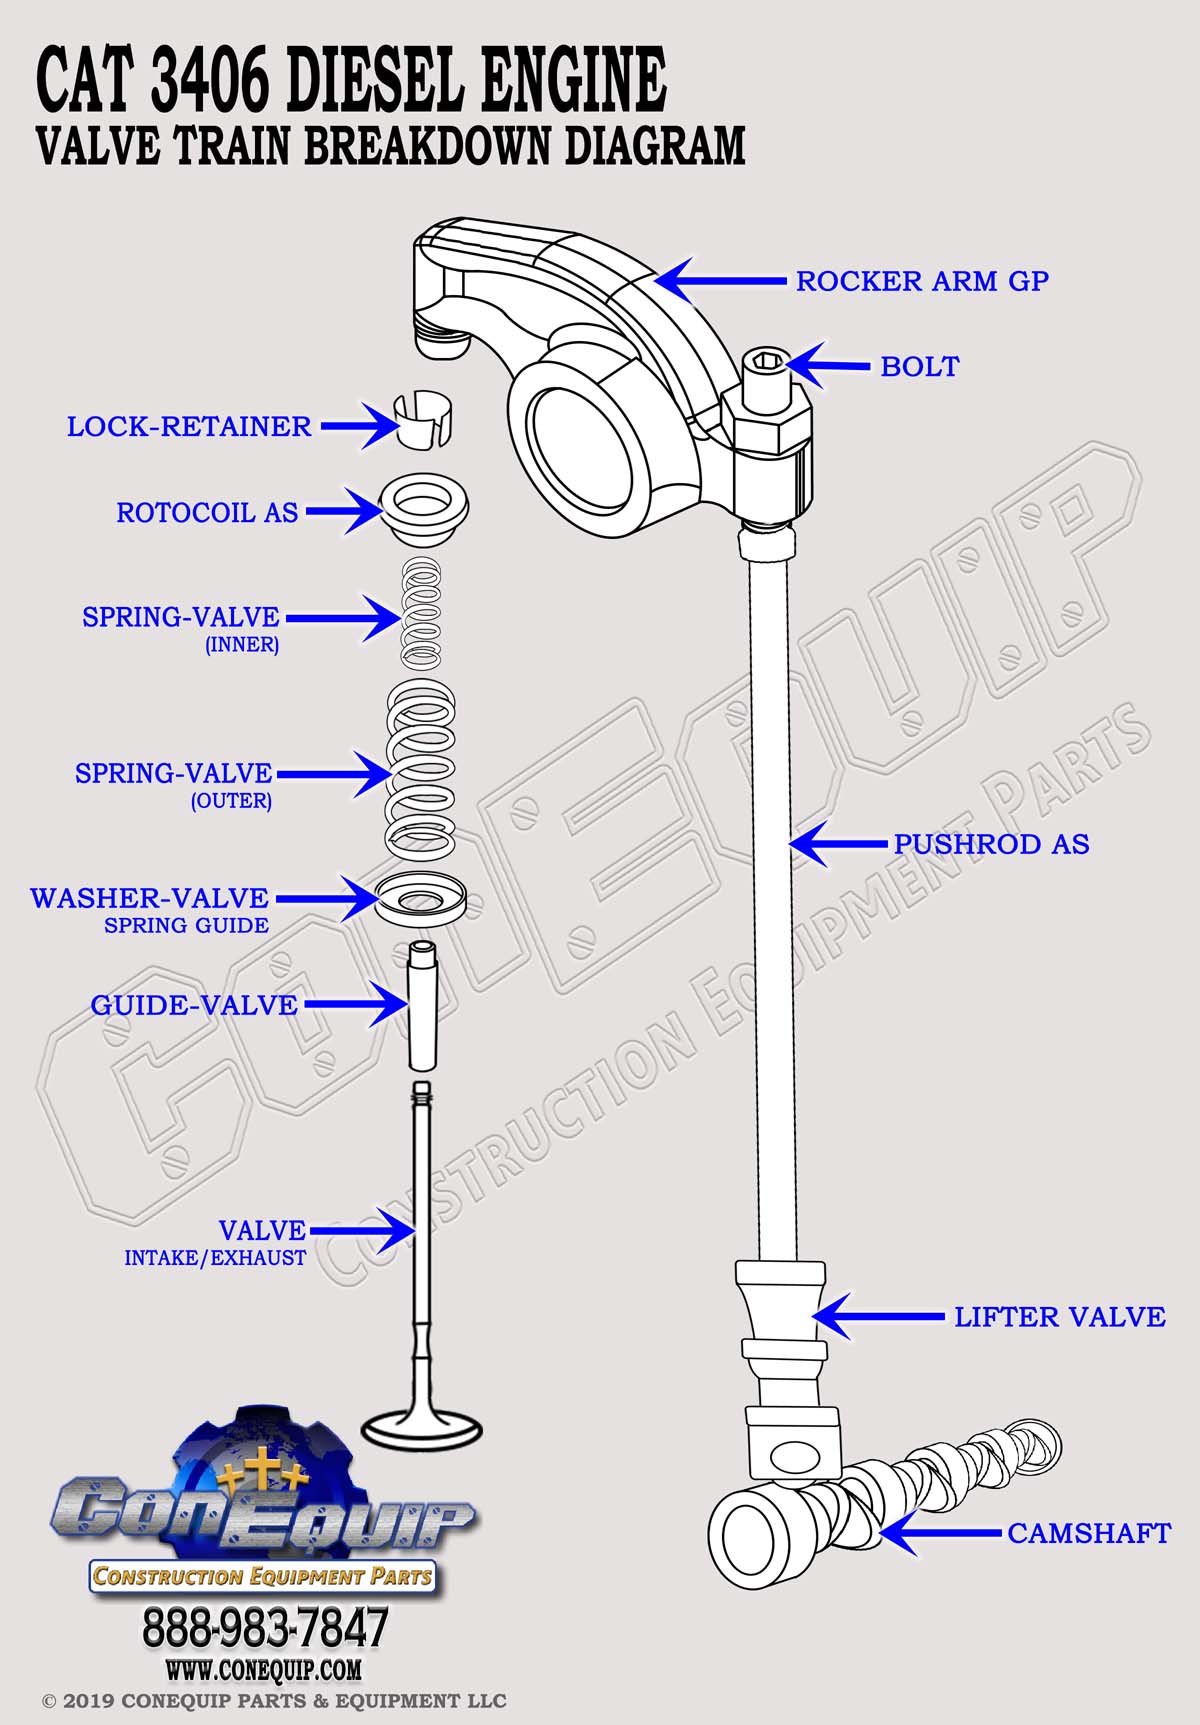 Cat 3406 valve train diagram